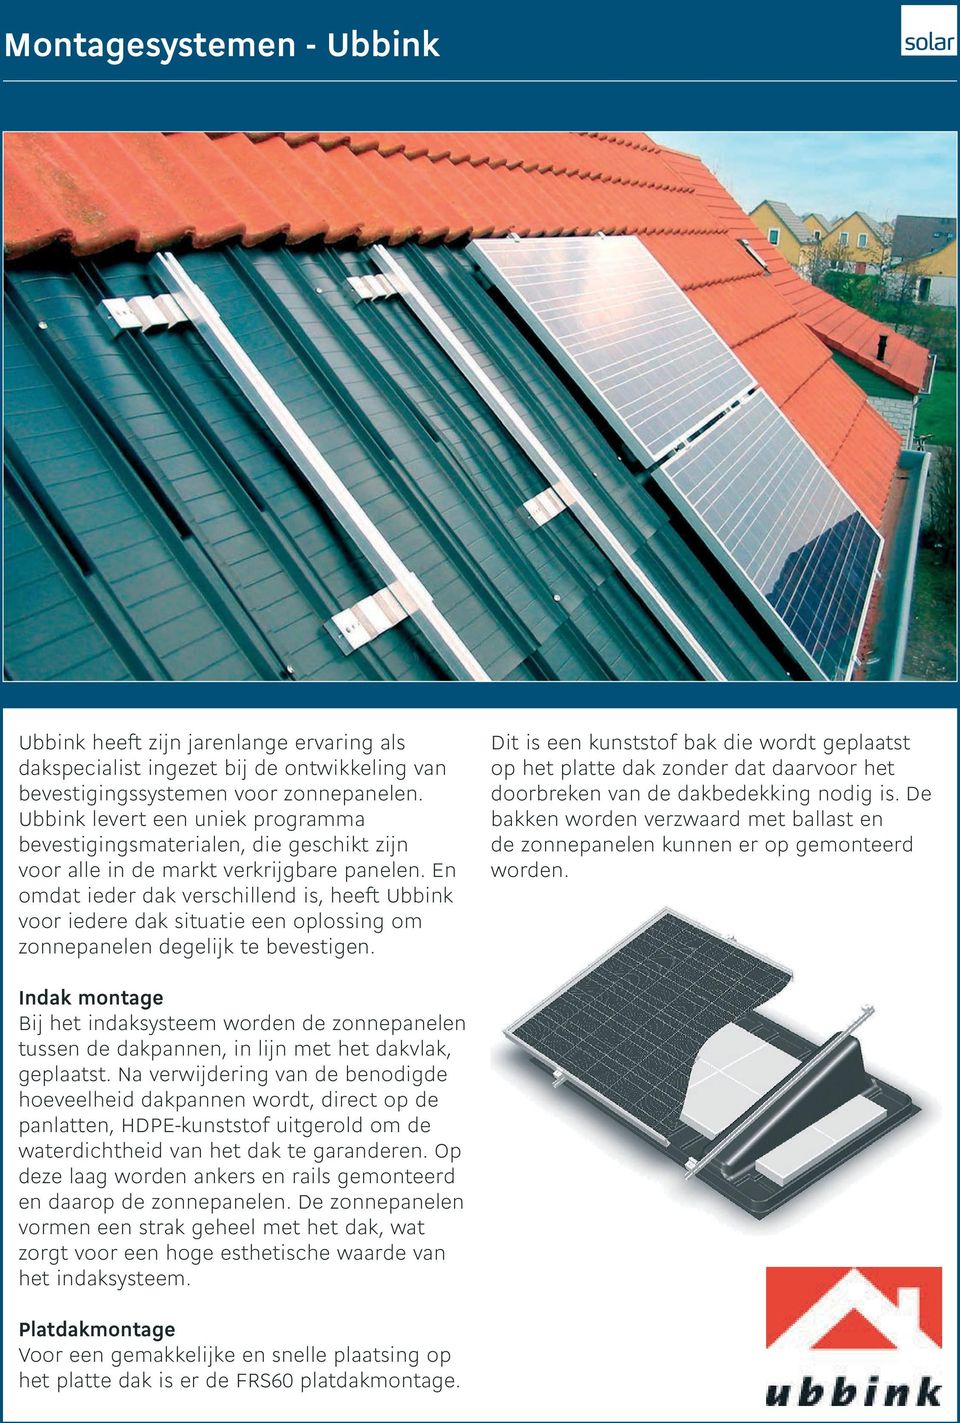 En omdat ieder dak verschillend is, heeft Ubbink voor iedere dak situatie een oplossing om zonnepanelen degelijk te bevestigen.